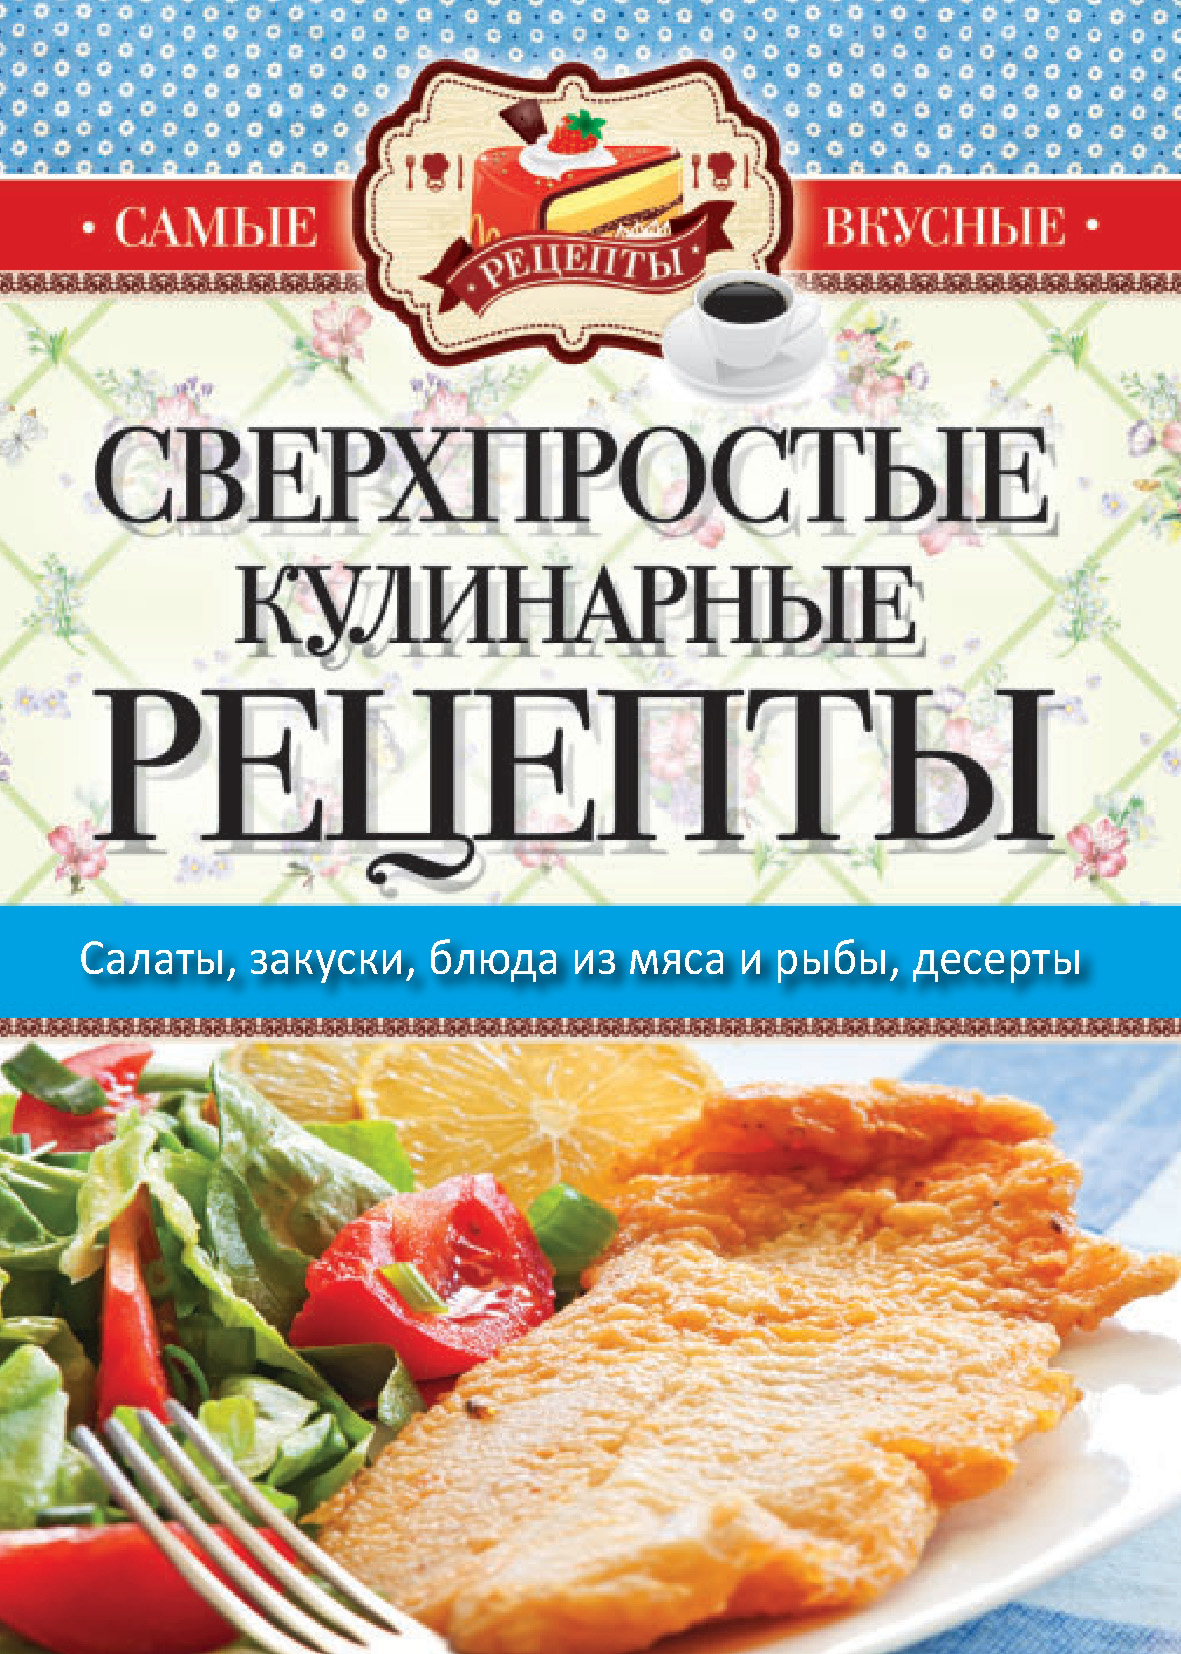 Книга Сверхпростые кулинарные рецепты из серии , созданная Сергей Кашин, может относится к жанру Кулинария. Стоимость электронной книги Сверхпростые кулинарные рецепты с идентификатором 8883168 составляет 75.00 руб.